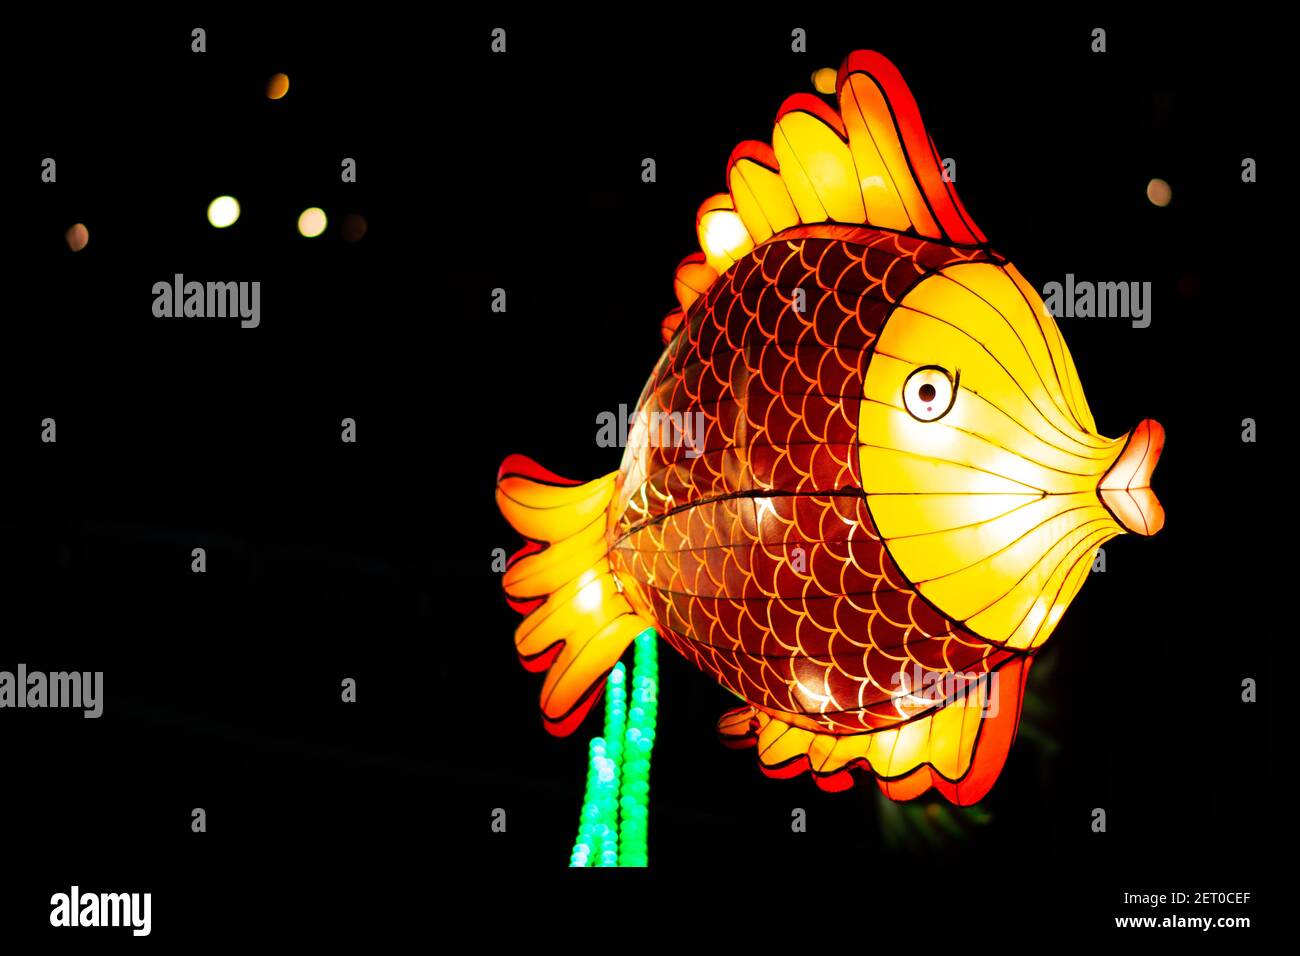 Le Festival des lanternes chinoises au parc de Limanski à Novi Sad. Le point culminant du Festival. Une lanterne de poisson colorée flotte dans l'air. Banque D'Images